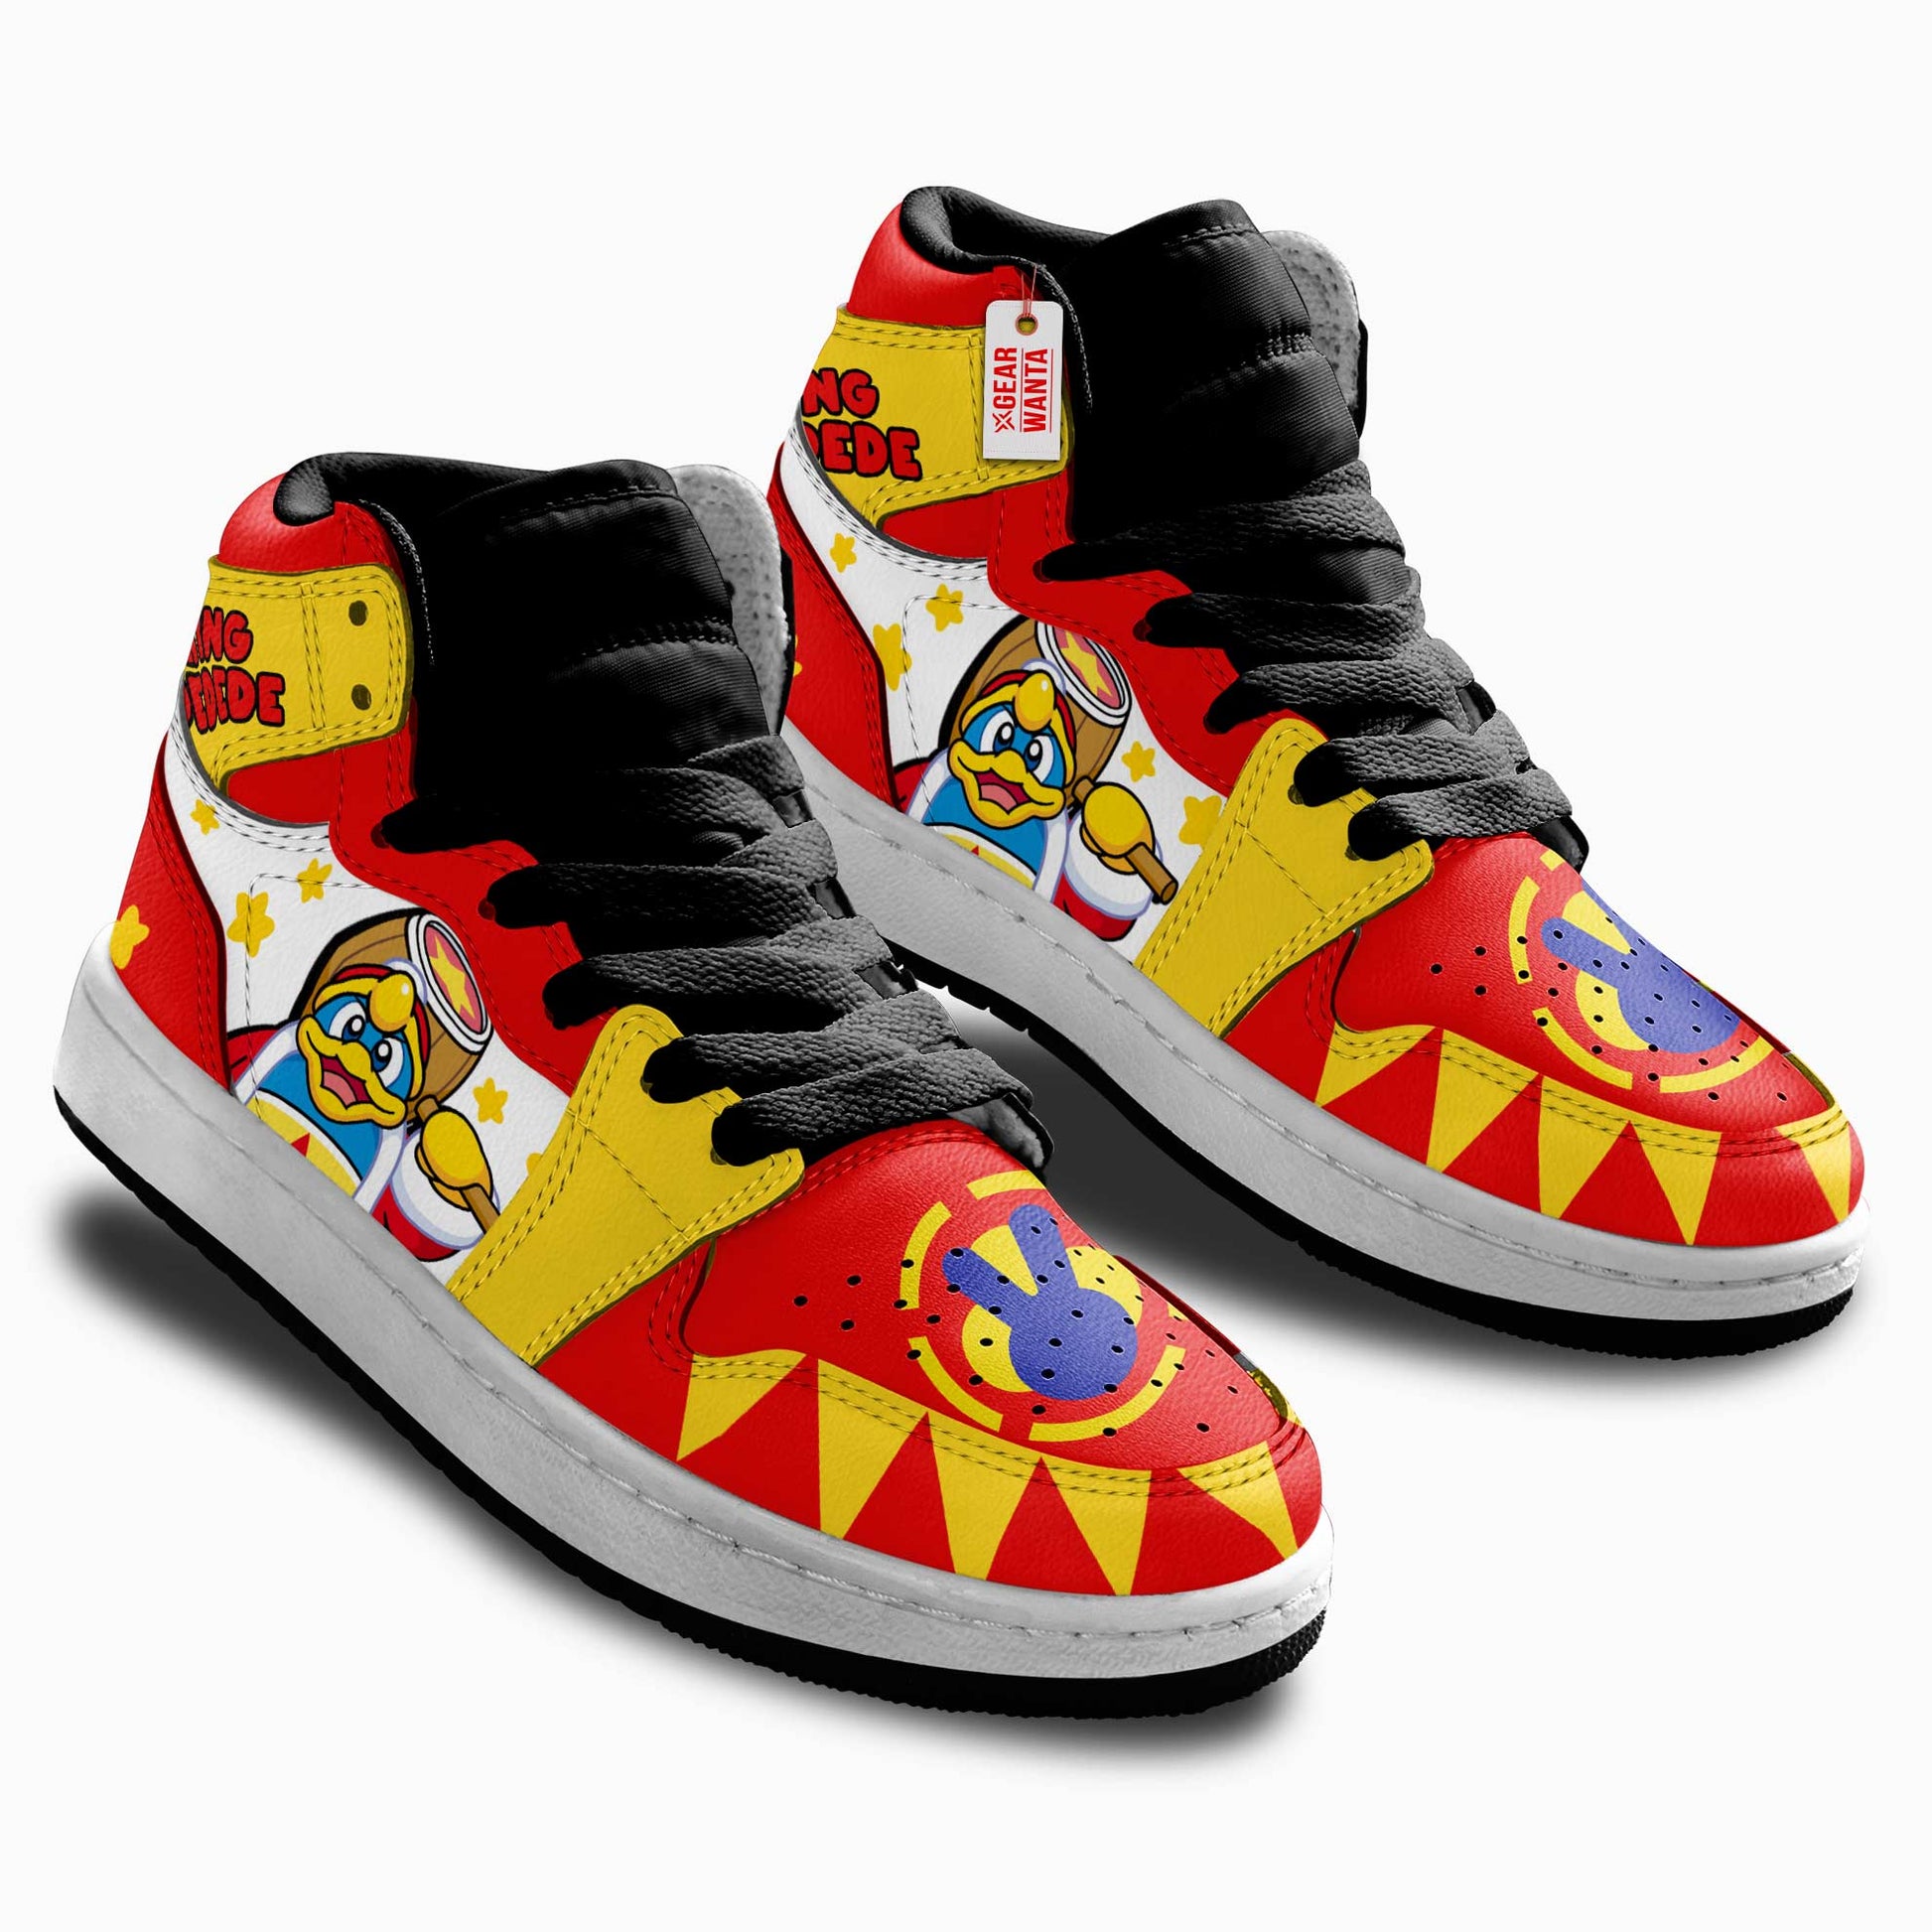 King Dedede Kirby Kid Sneakers Custom For Kids-Gear Wanta